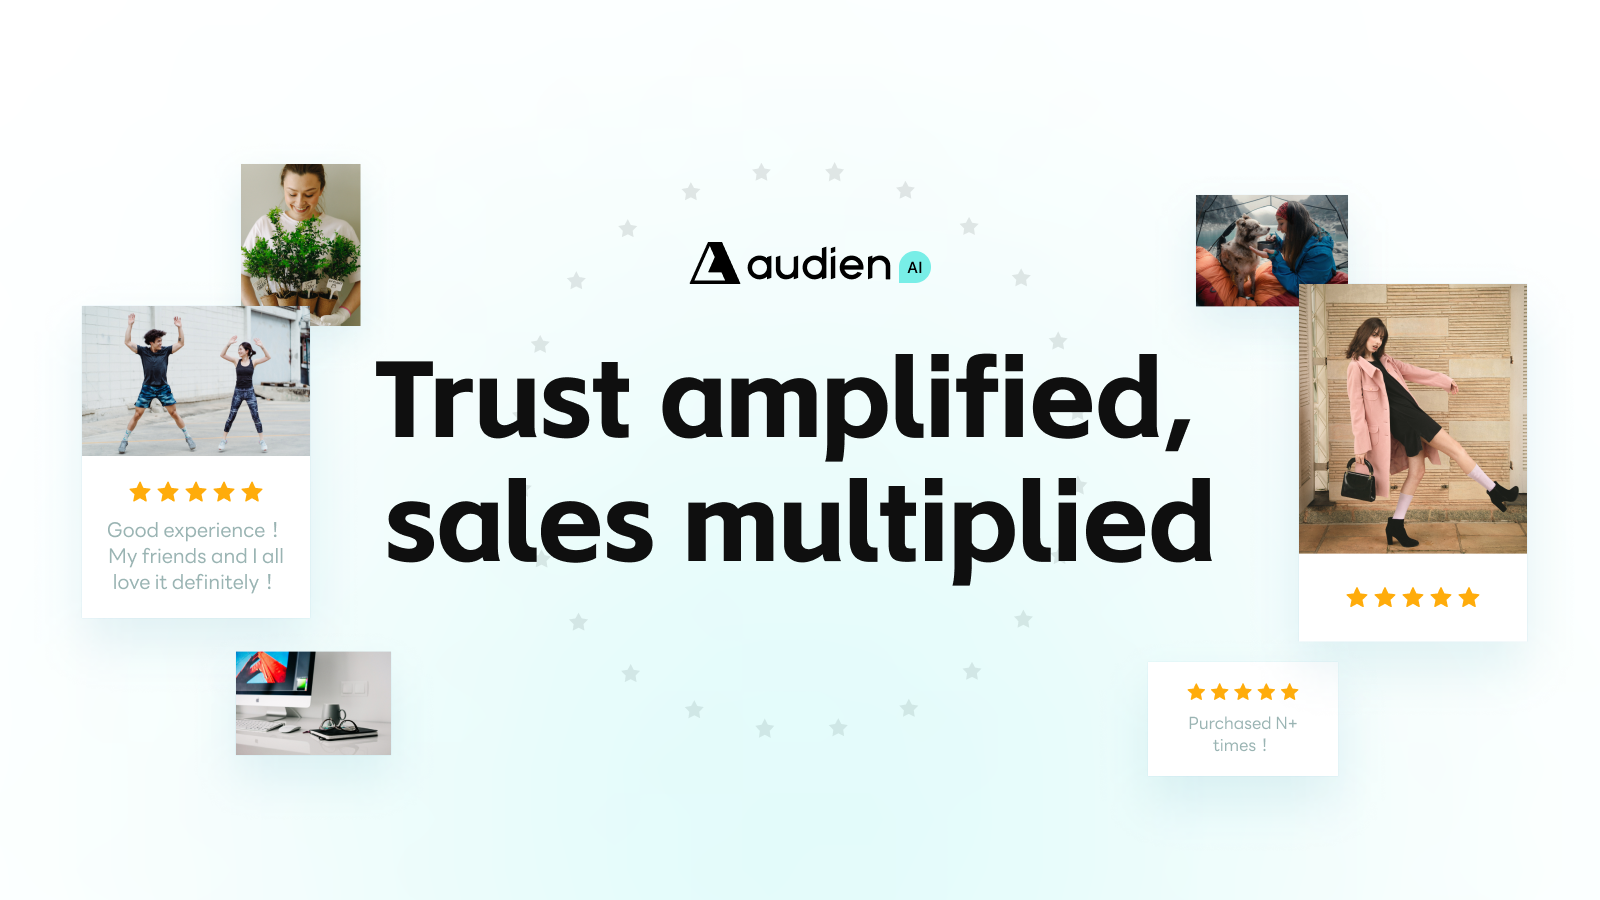 Produkt Review App af Audien hjælper med at forstærke butikstillid og salg